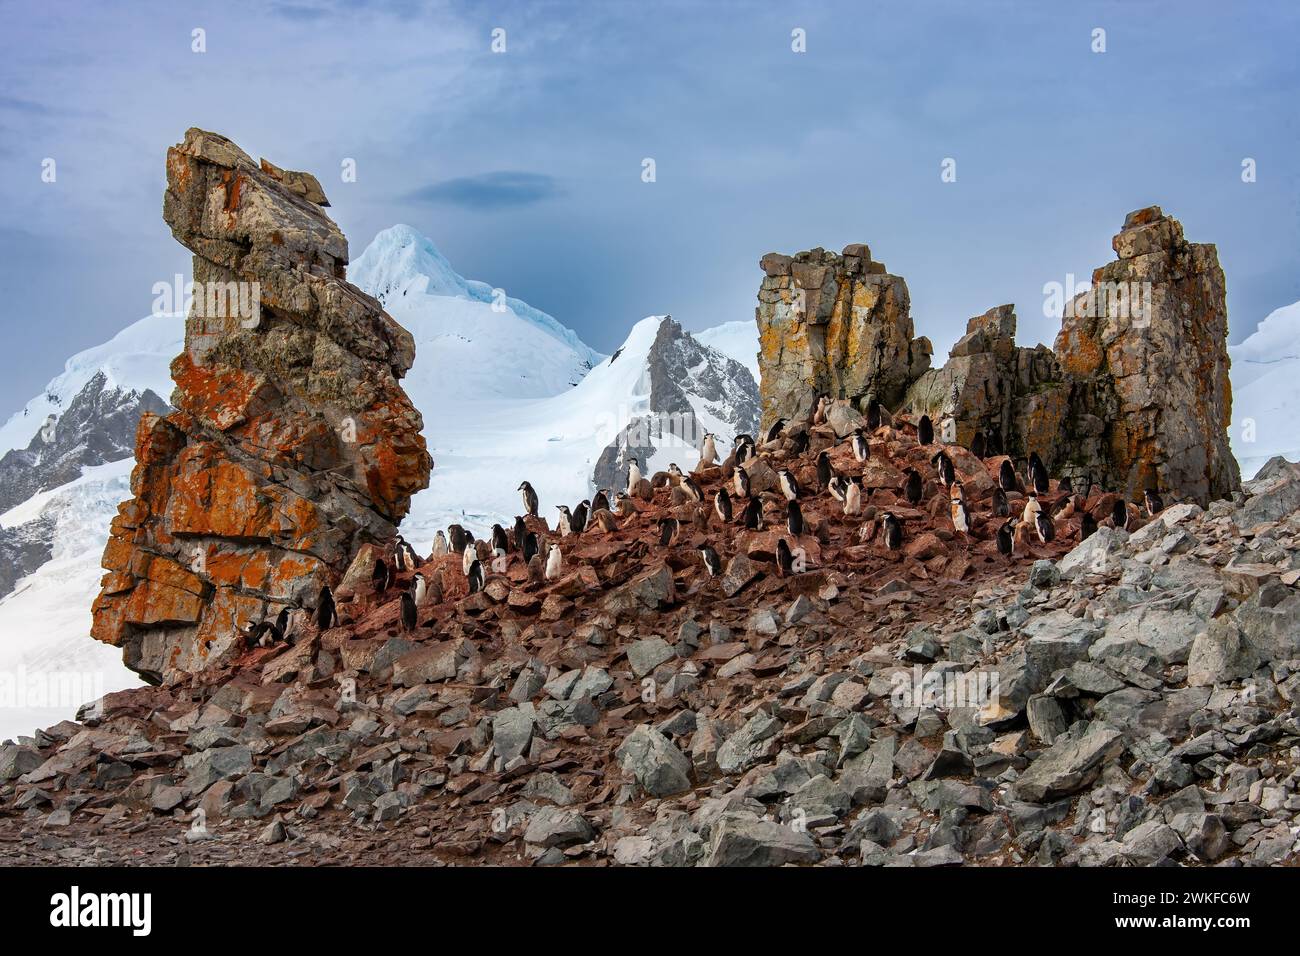 Une colonie de manchots Chinstrap ( Pygoscelis antarcticus ) près d'un pilier de roche basaltique ignée, sur une île au large de la péninsule Antarctique, Antarctique Banque D'Images